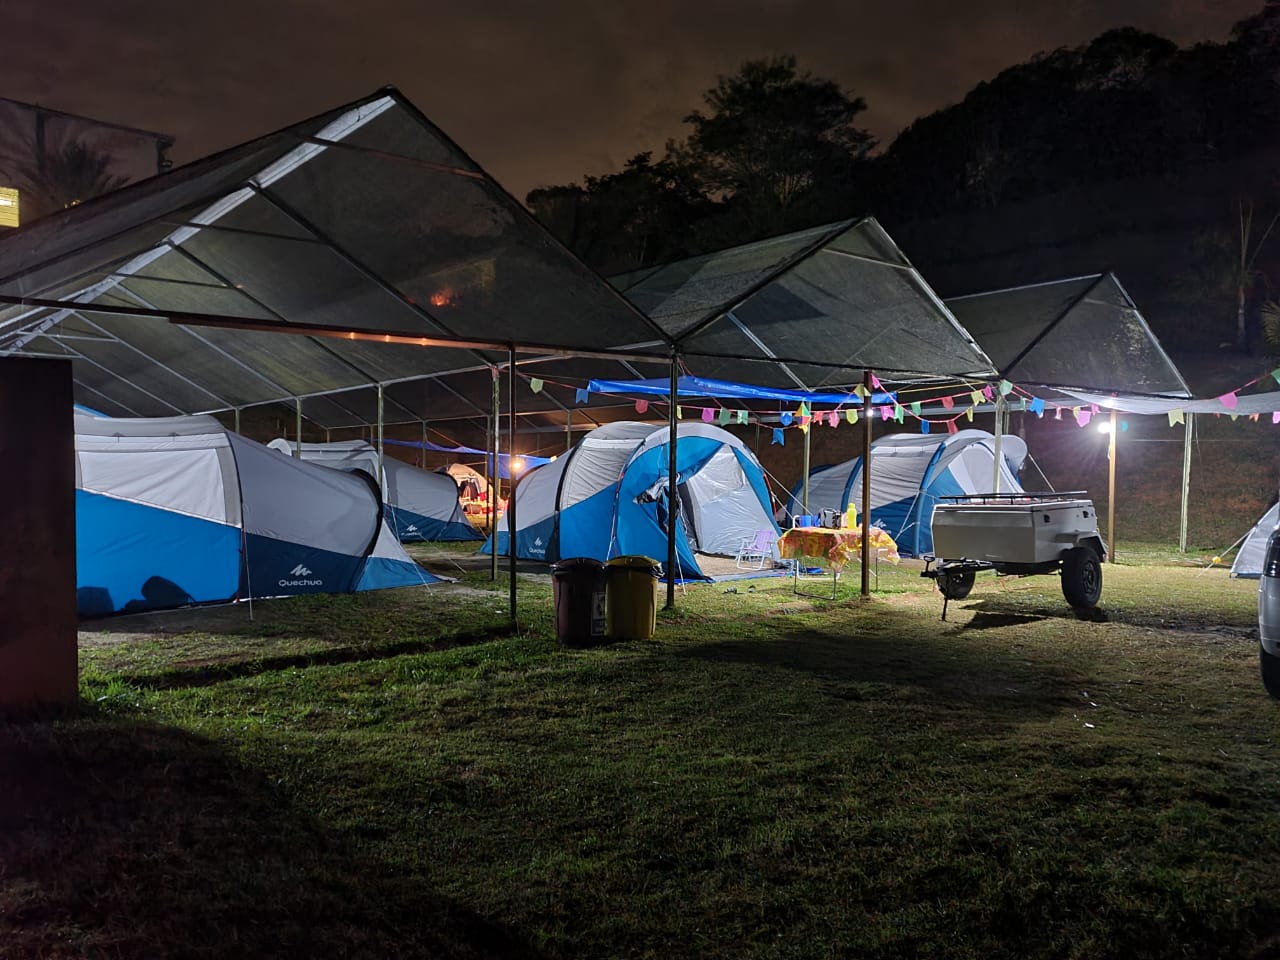 Giro de barracas - Aniversário Vapo Camping 